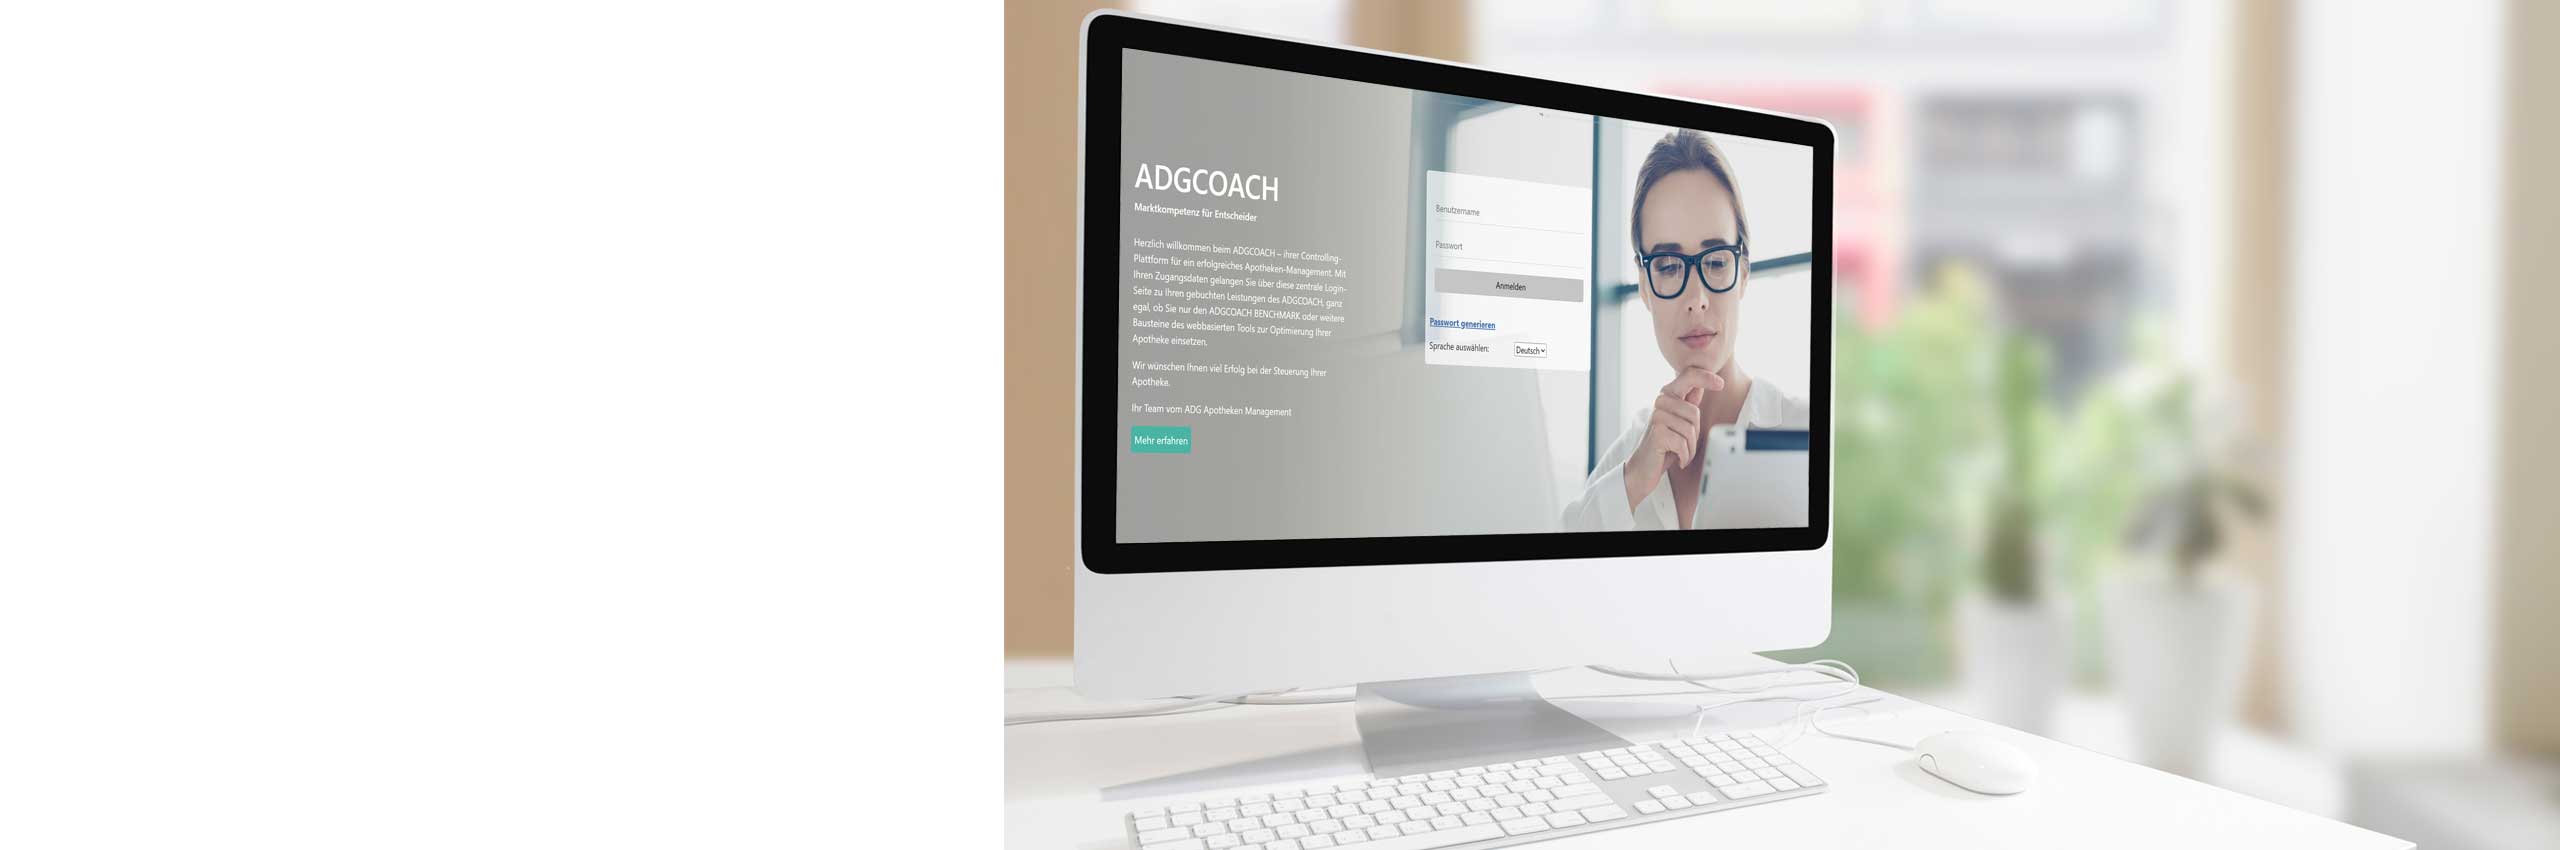 Bildschirm mir ADGCOACH Startseite 